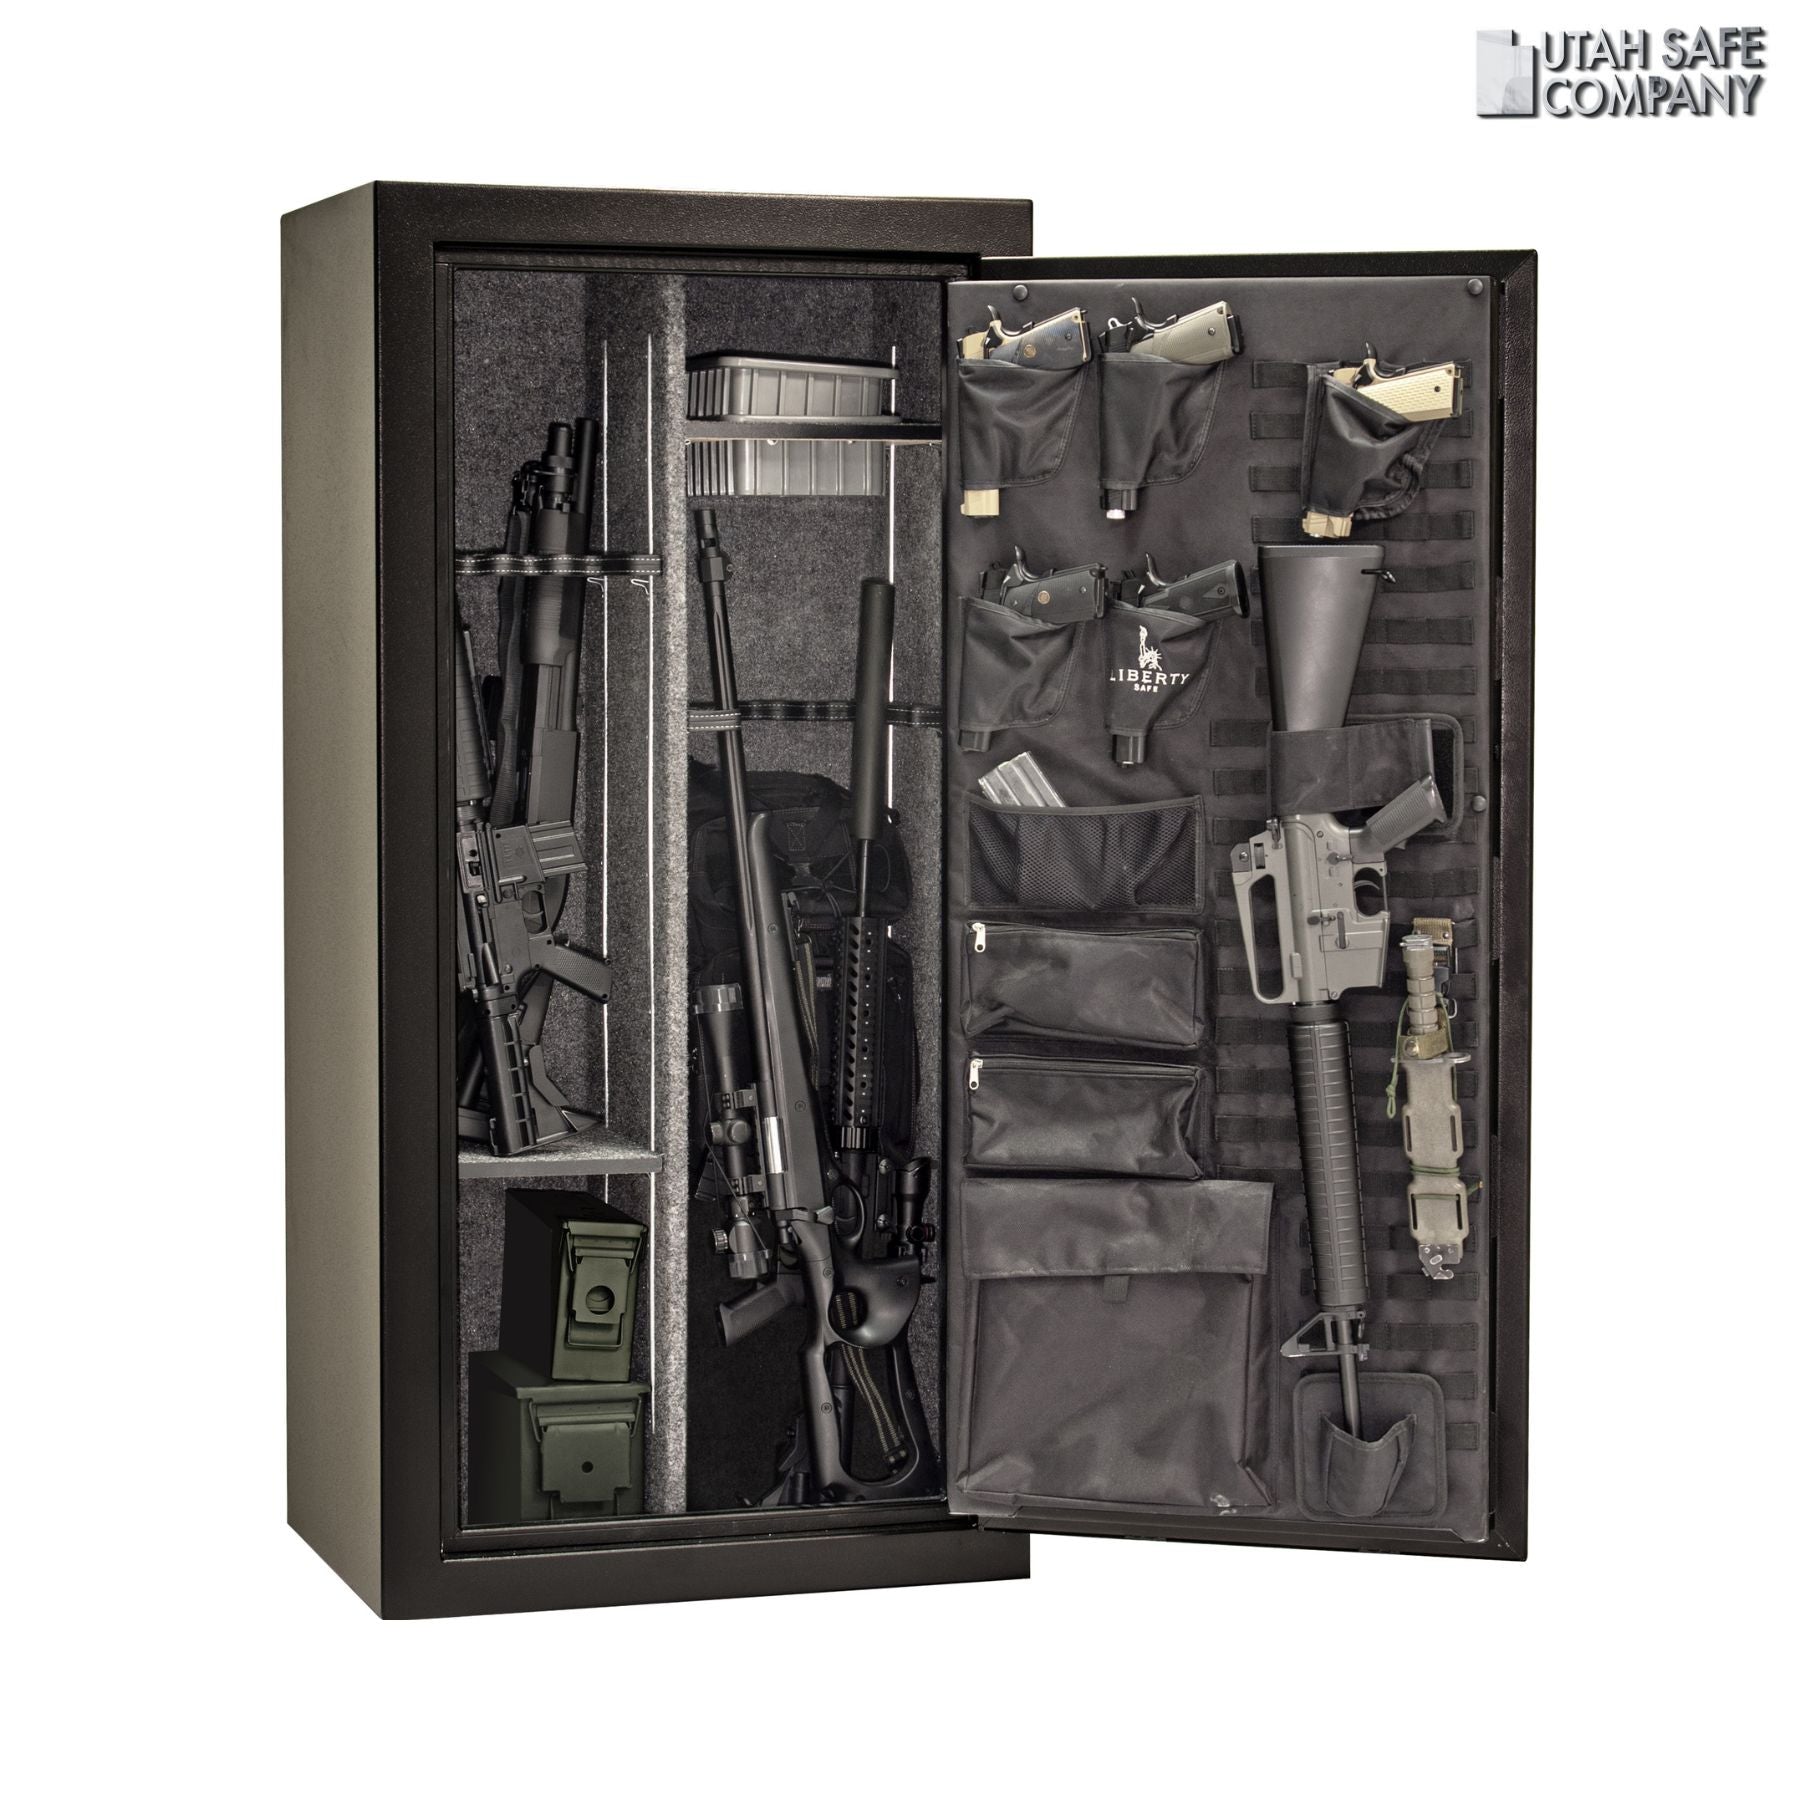 Liberty Tactical 24 Gun Safe - Utah Safe Company